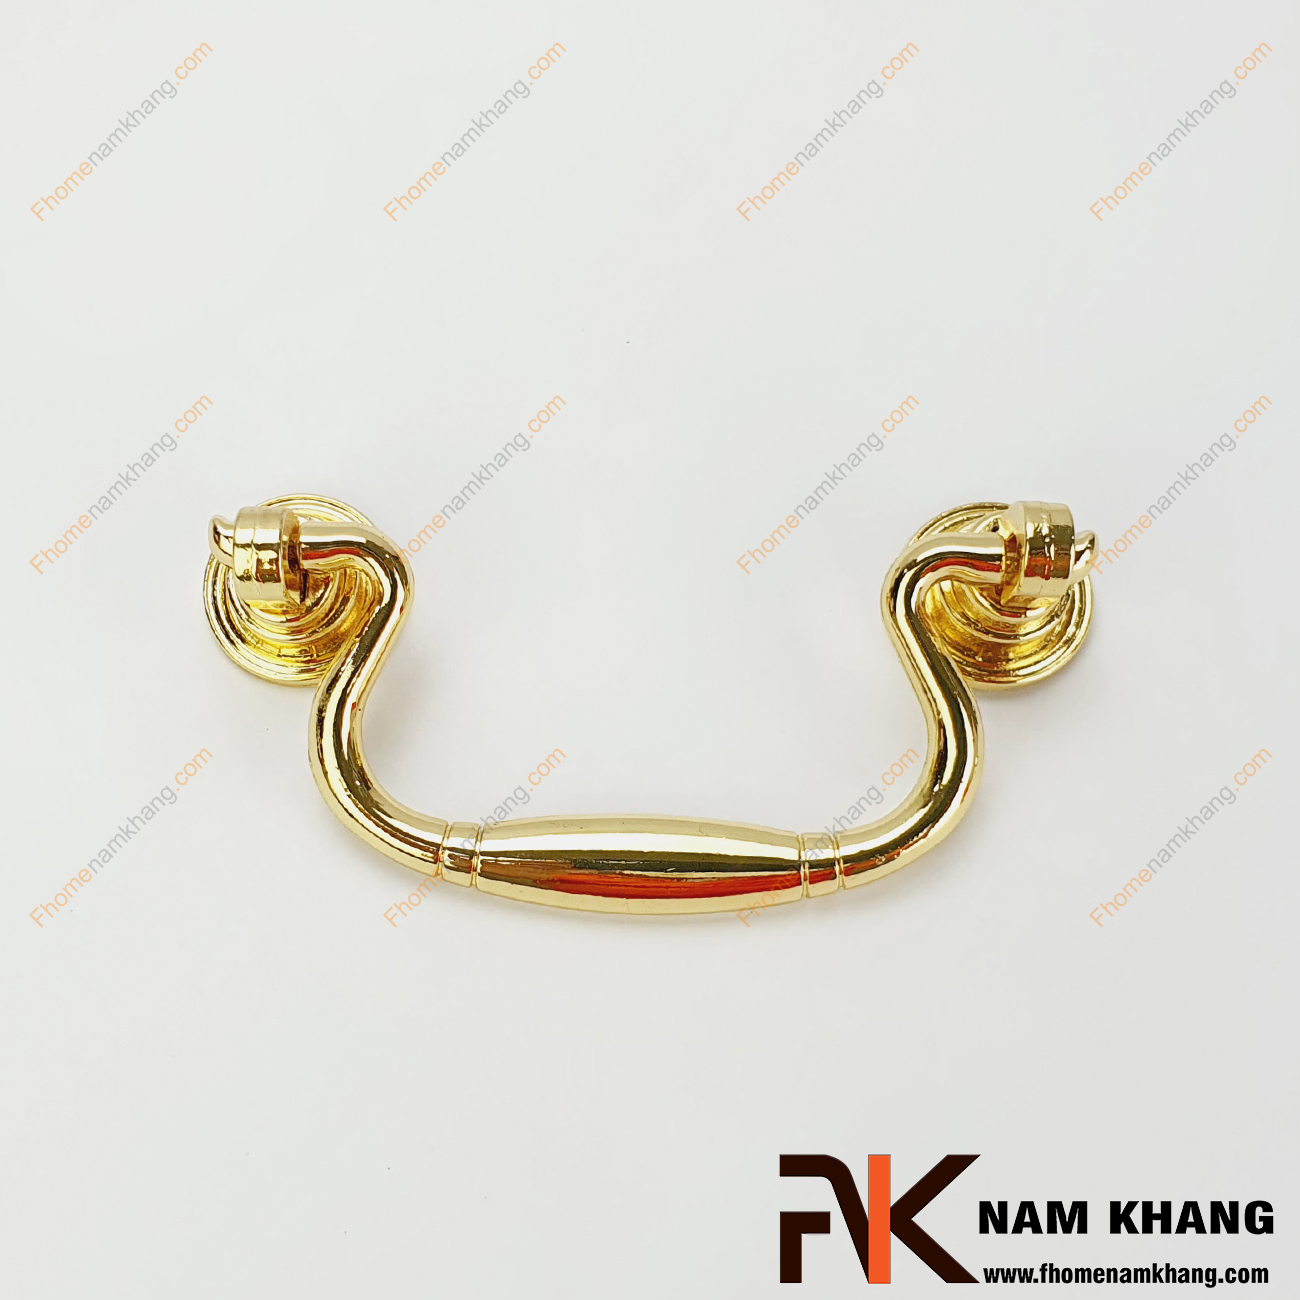 Tay nắm tủ dạng vòng màu vàng đồng NK100-80VB là một dạng tay nắm kết hợp khi thiết kế với 2 khuôn dạng bao gồm phần đế và vòng nắm. Sản phẩm theo kiểu tay rơi có màu sắc nhẹ nhàng dễ dàng phối hợp trên nhiều phong cách tủ kệ